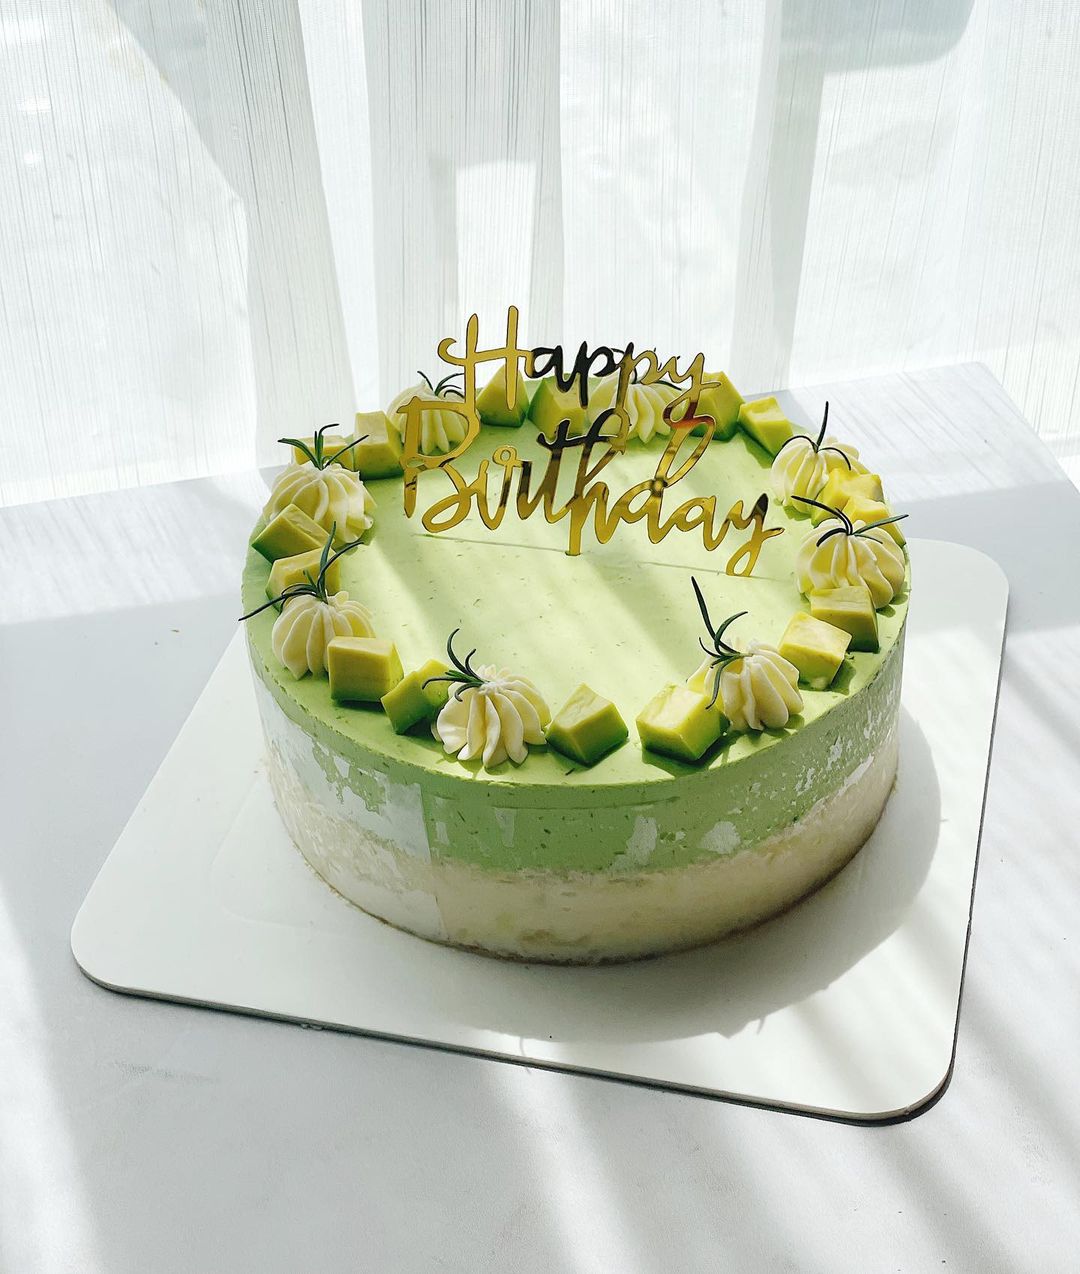 Bánh sinh nhật 2 màu trắng xanh trang trí những quả cầu đẹp mắt  Bánh  Thiên Thần  Chuyên nhận đặt bánh sinh nhật theo mẫu